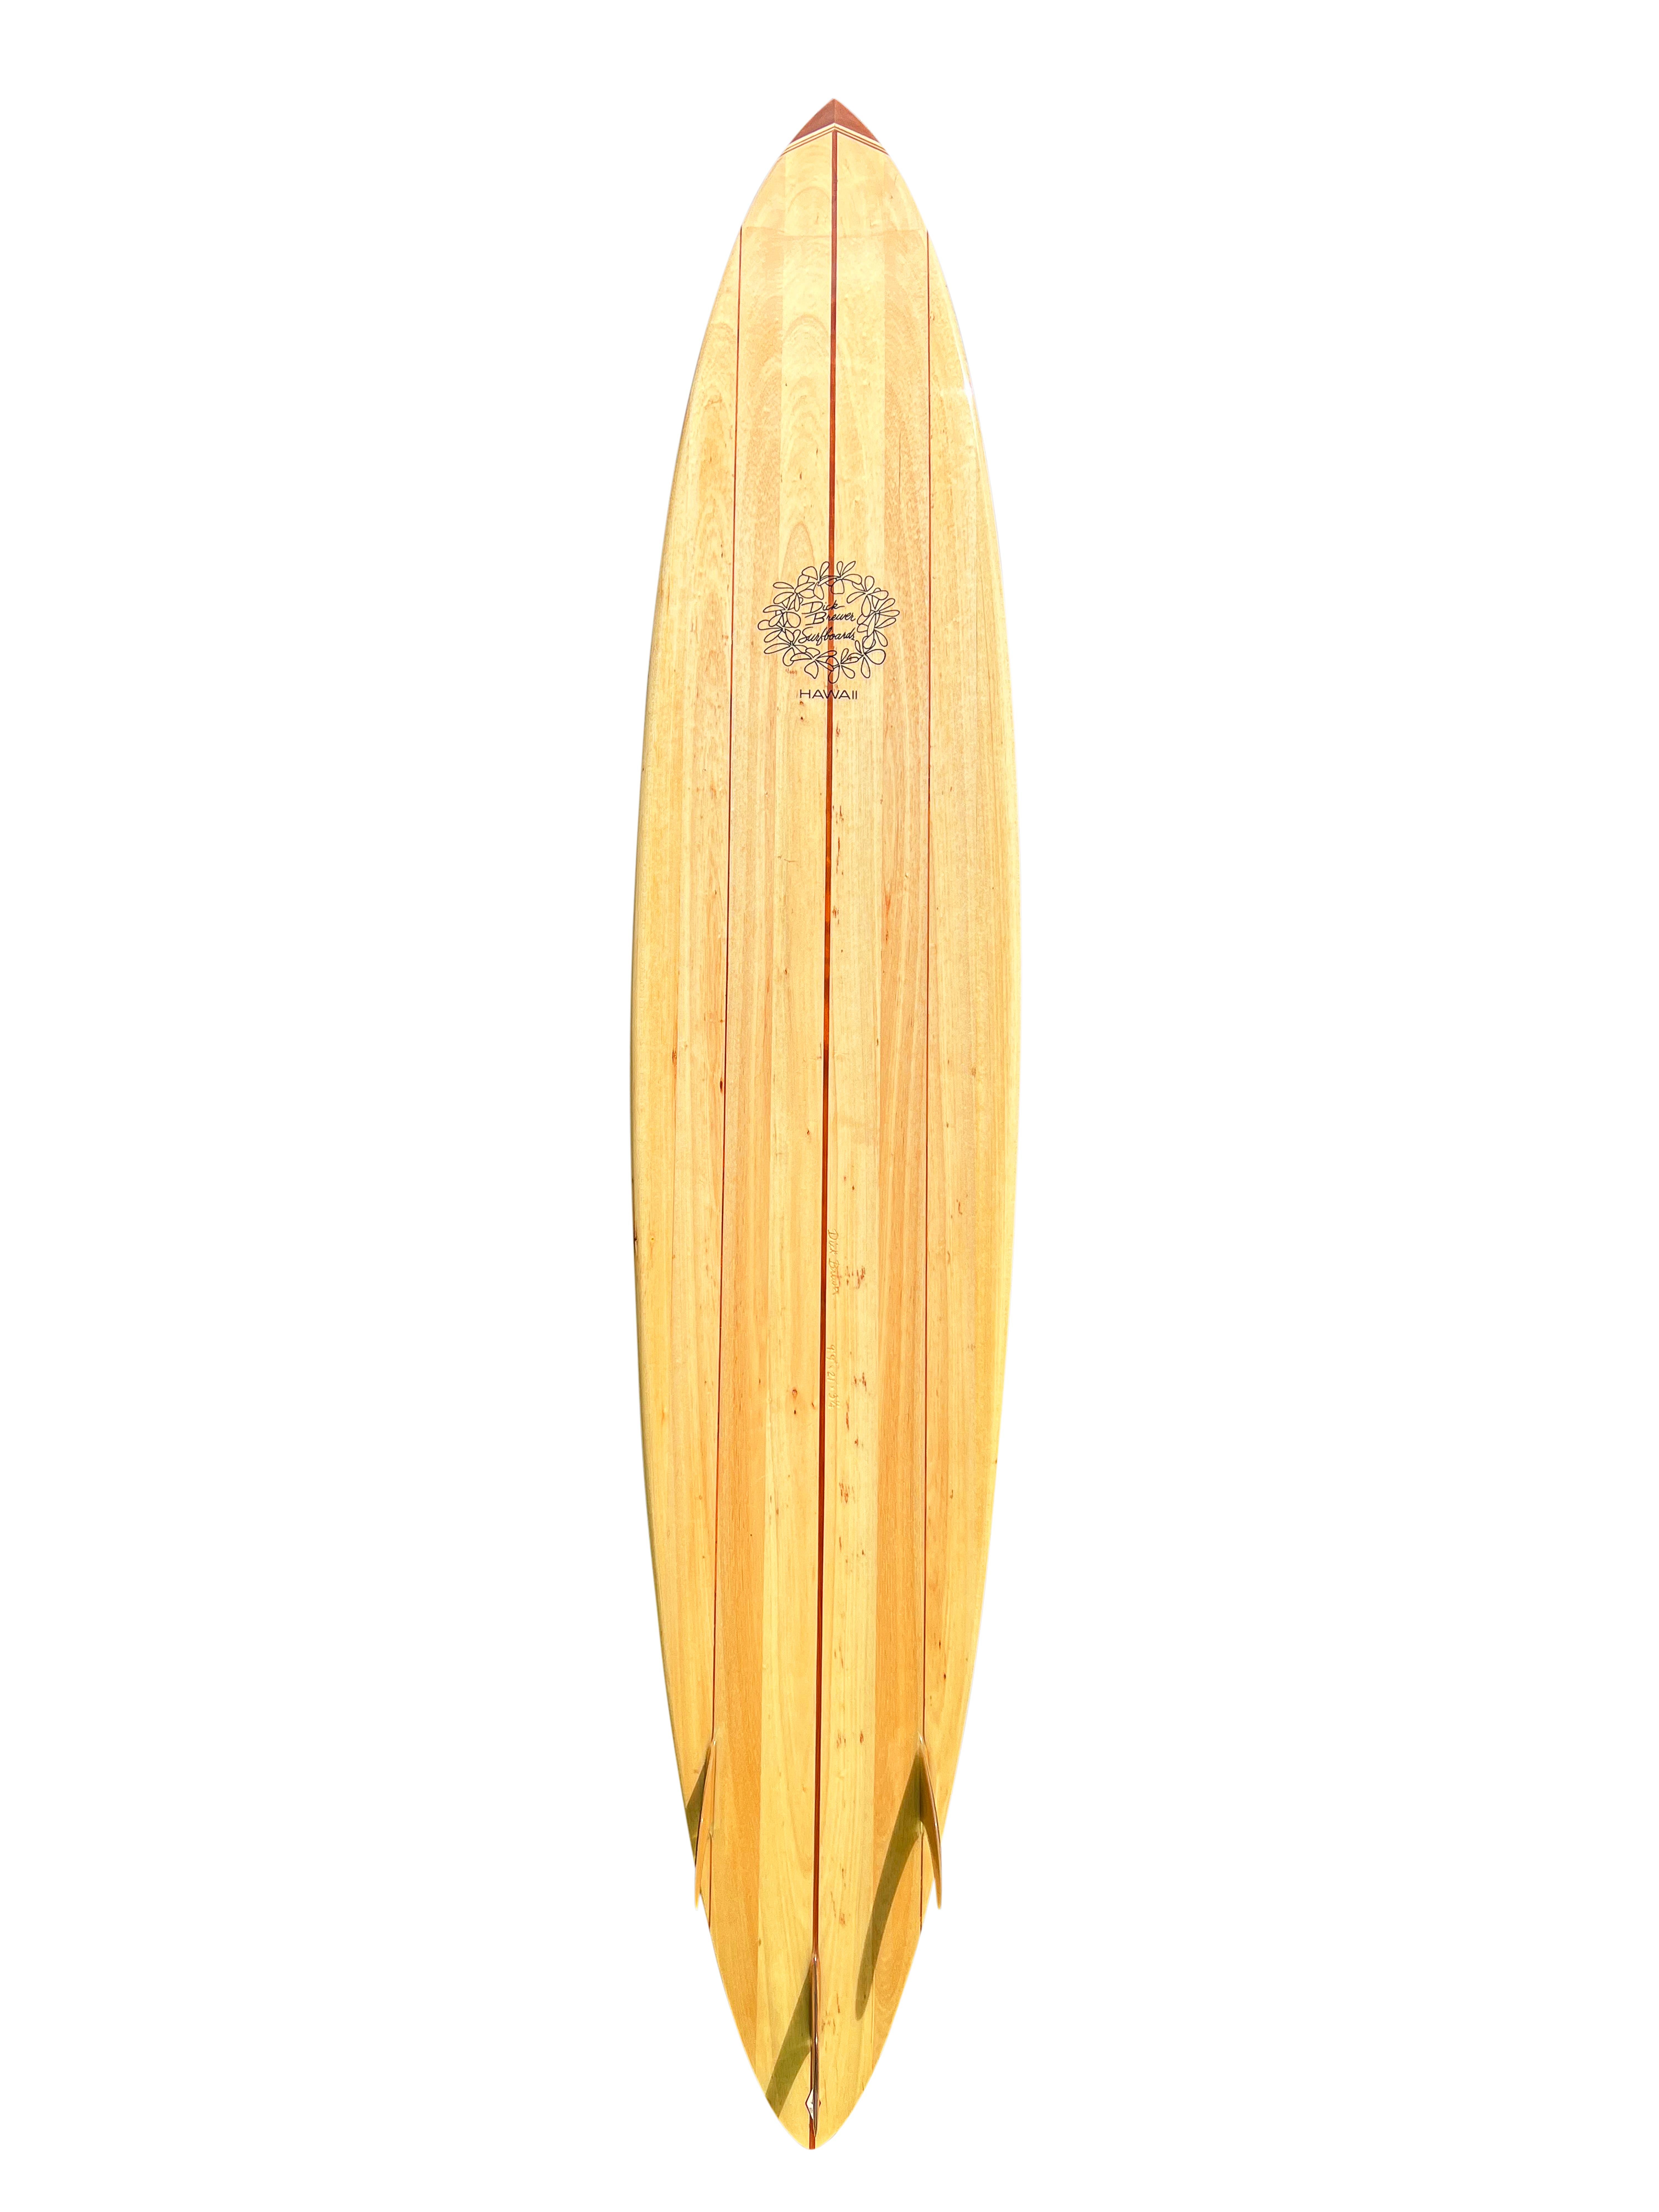 Big wave balsawood pintail surfboard shaped by the late Dick Brewer (1936-2022) in the early 2000s.  Le modèle à trois cordes est doté de magnifiques ailerons en bois de koa hawaïen et d'un nez en bois de 10 pièces. Un exemple remarquable de planche